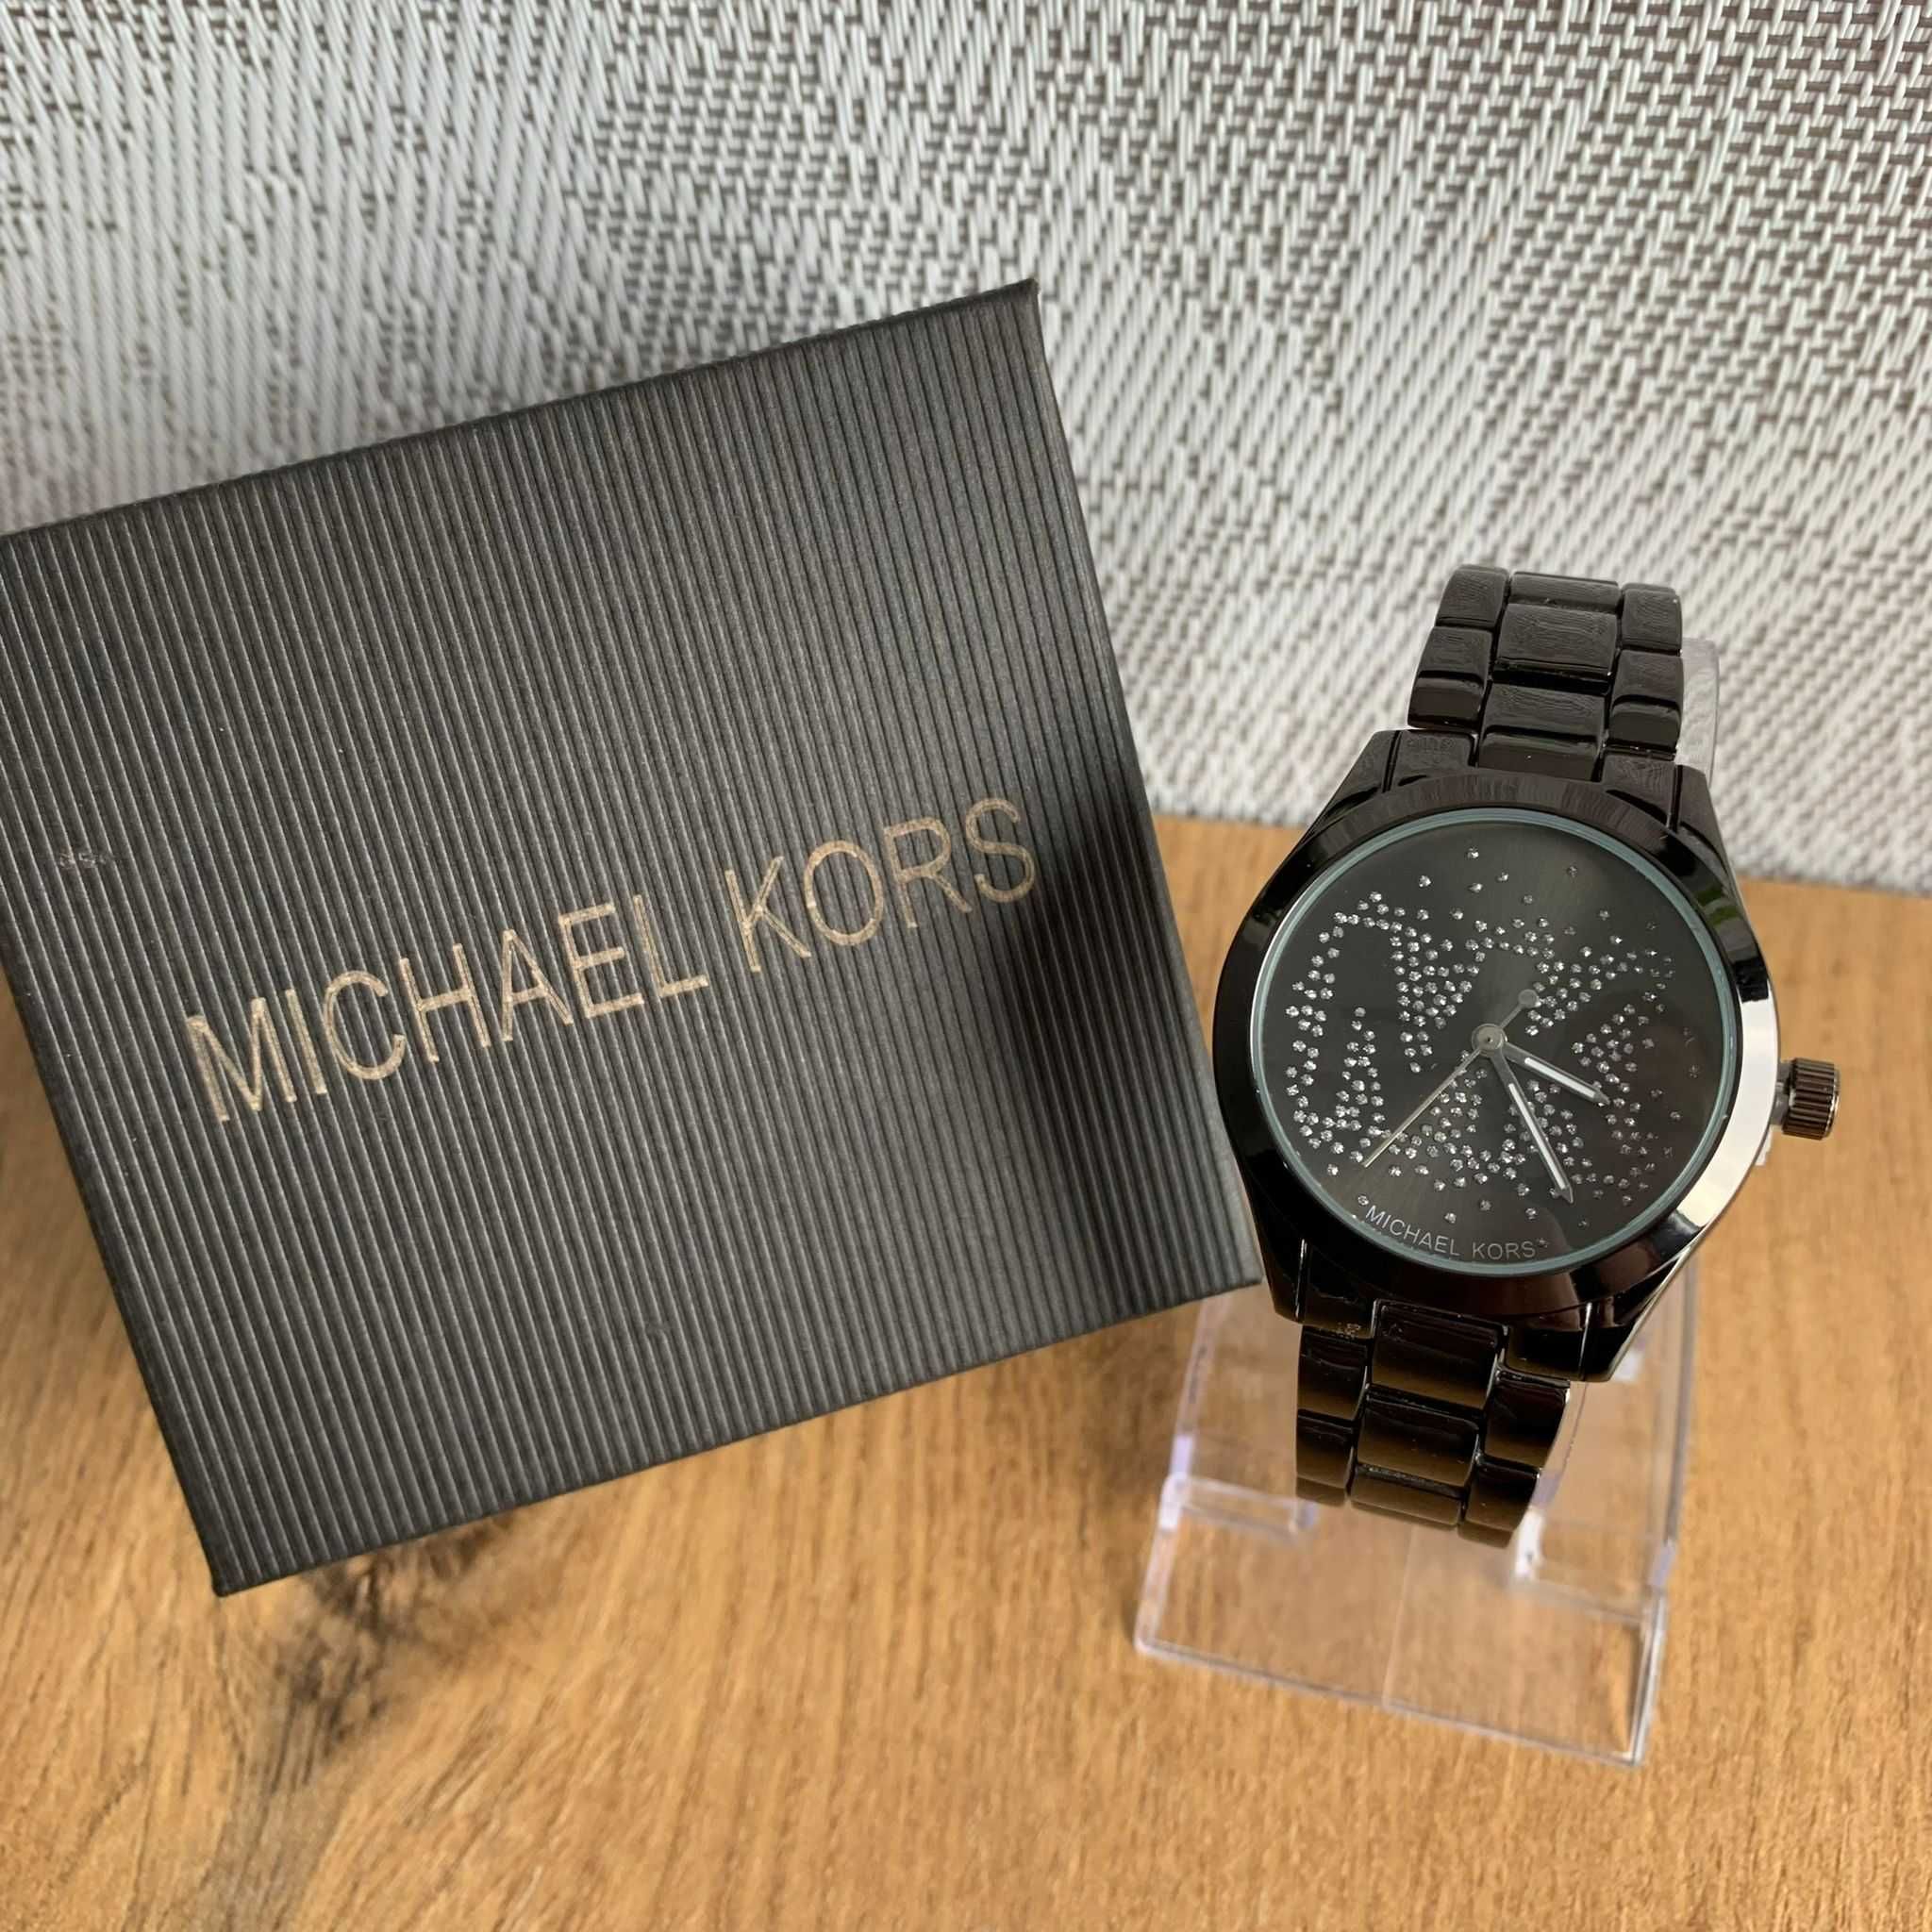 Damski Zegarek Michael Kors - Analogowy Klasyczny Kolekcjonerski